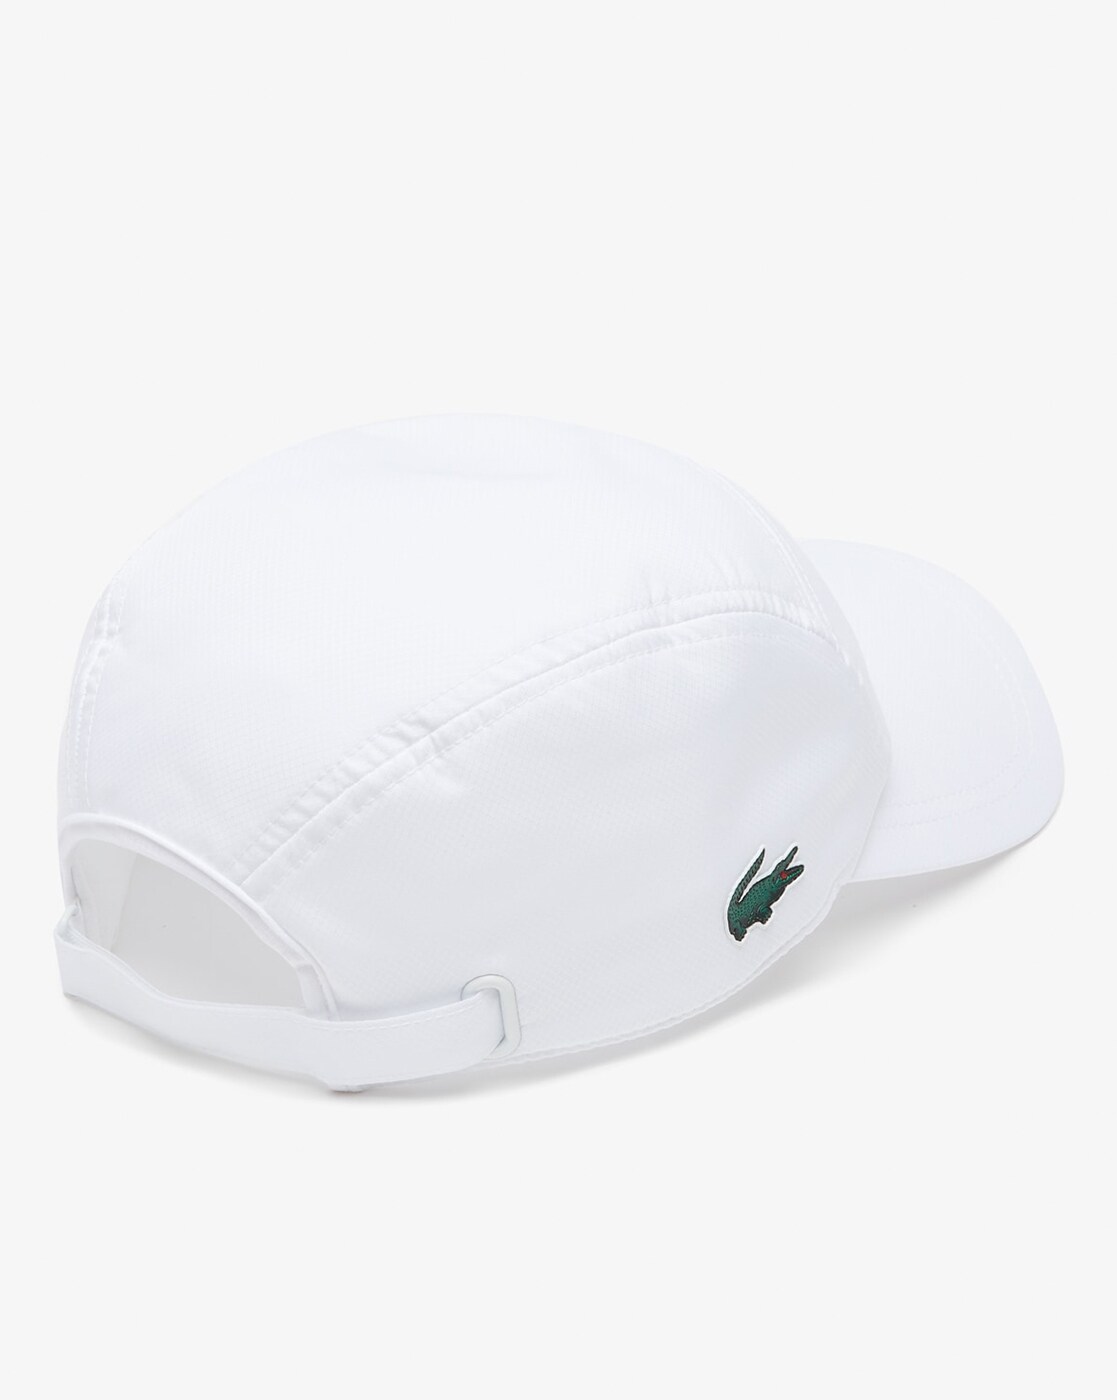 Ren Æble tvivl Buy White Caps & Hats for Men by Lacoste Online | Ajio.com